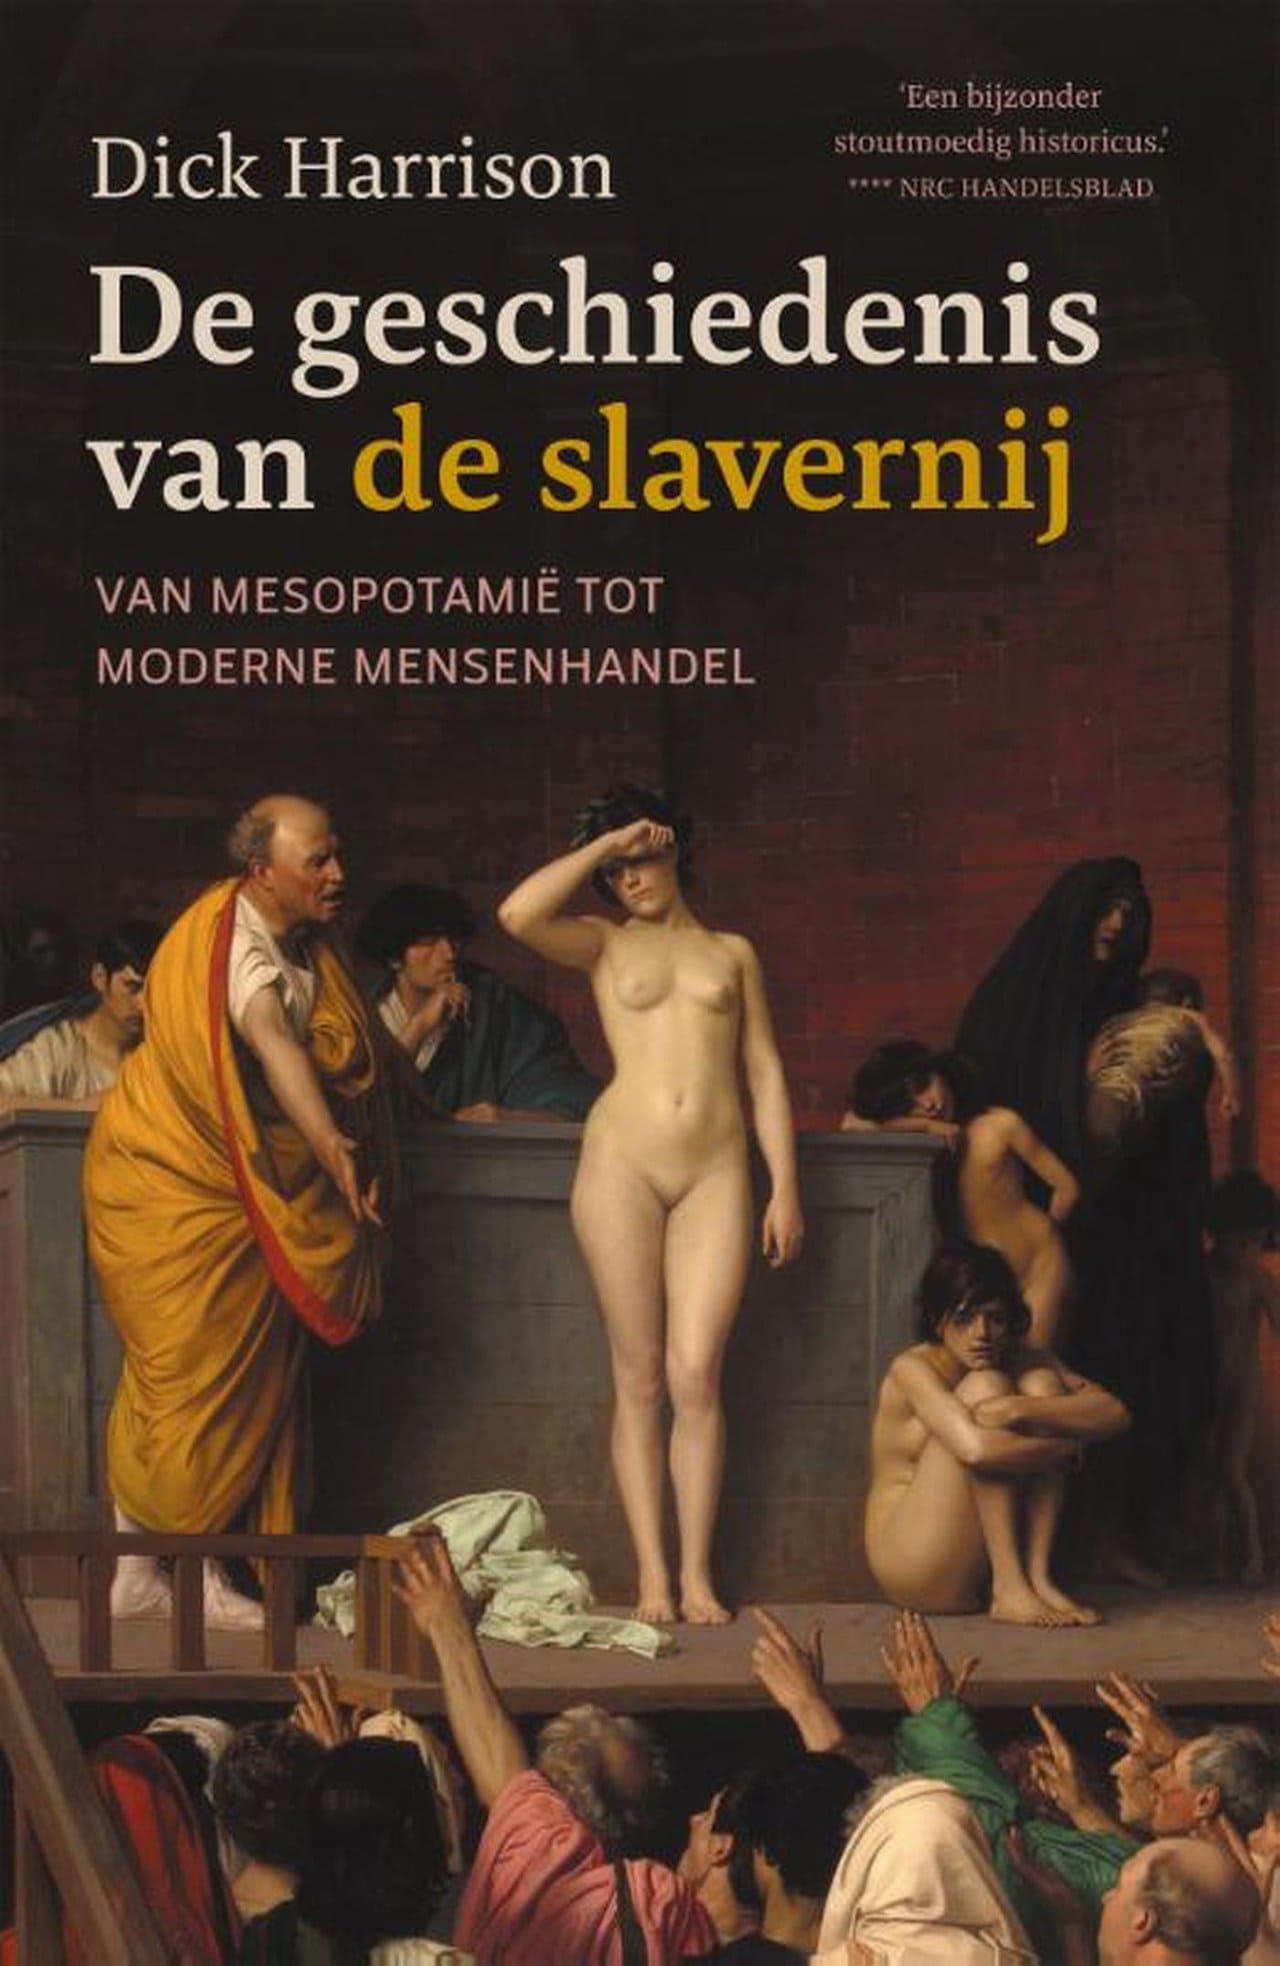 Afbeelding De geschiedenis van de slavernij (e-book)